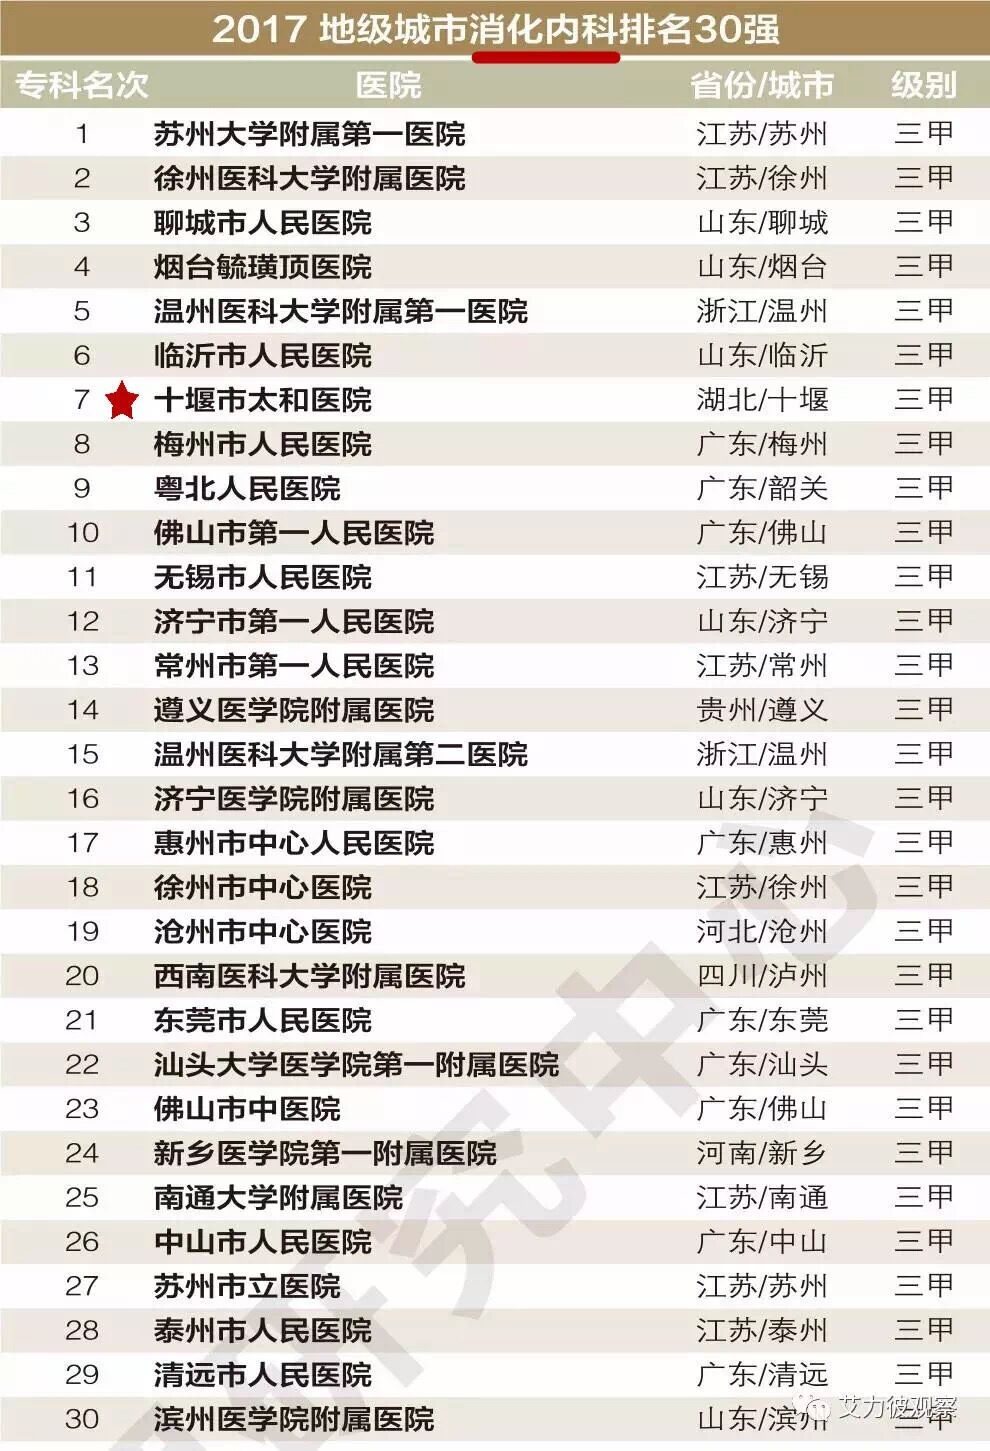 太和医院入榜2017中国医院竞争力排行榜!